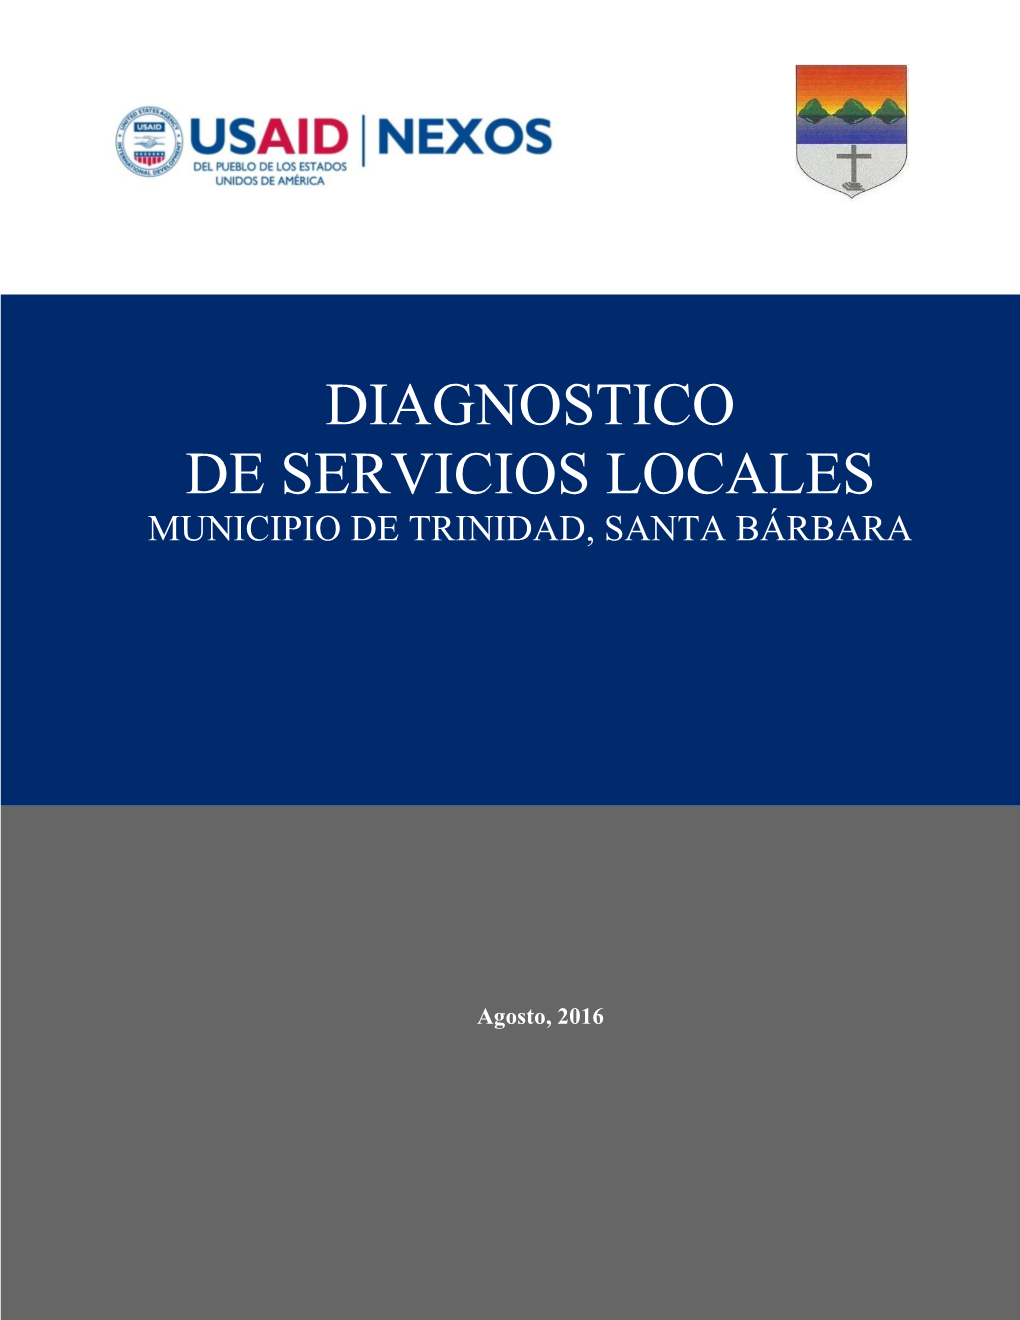 Diagnostico De Servicios Locales Municipio De Trinidad, Santa Bárbara